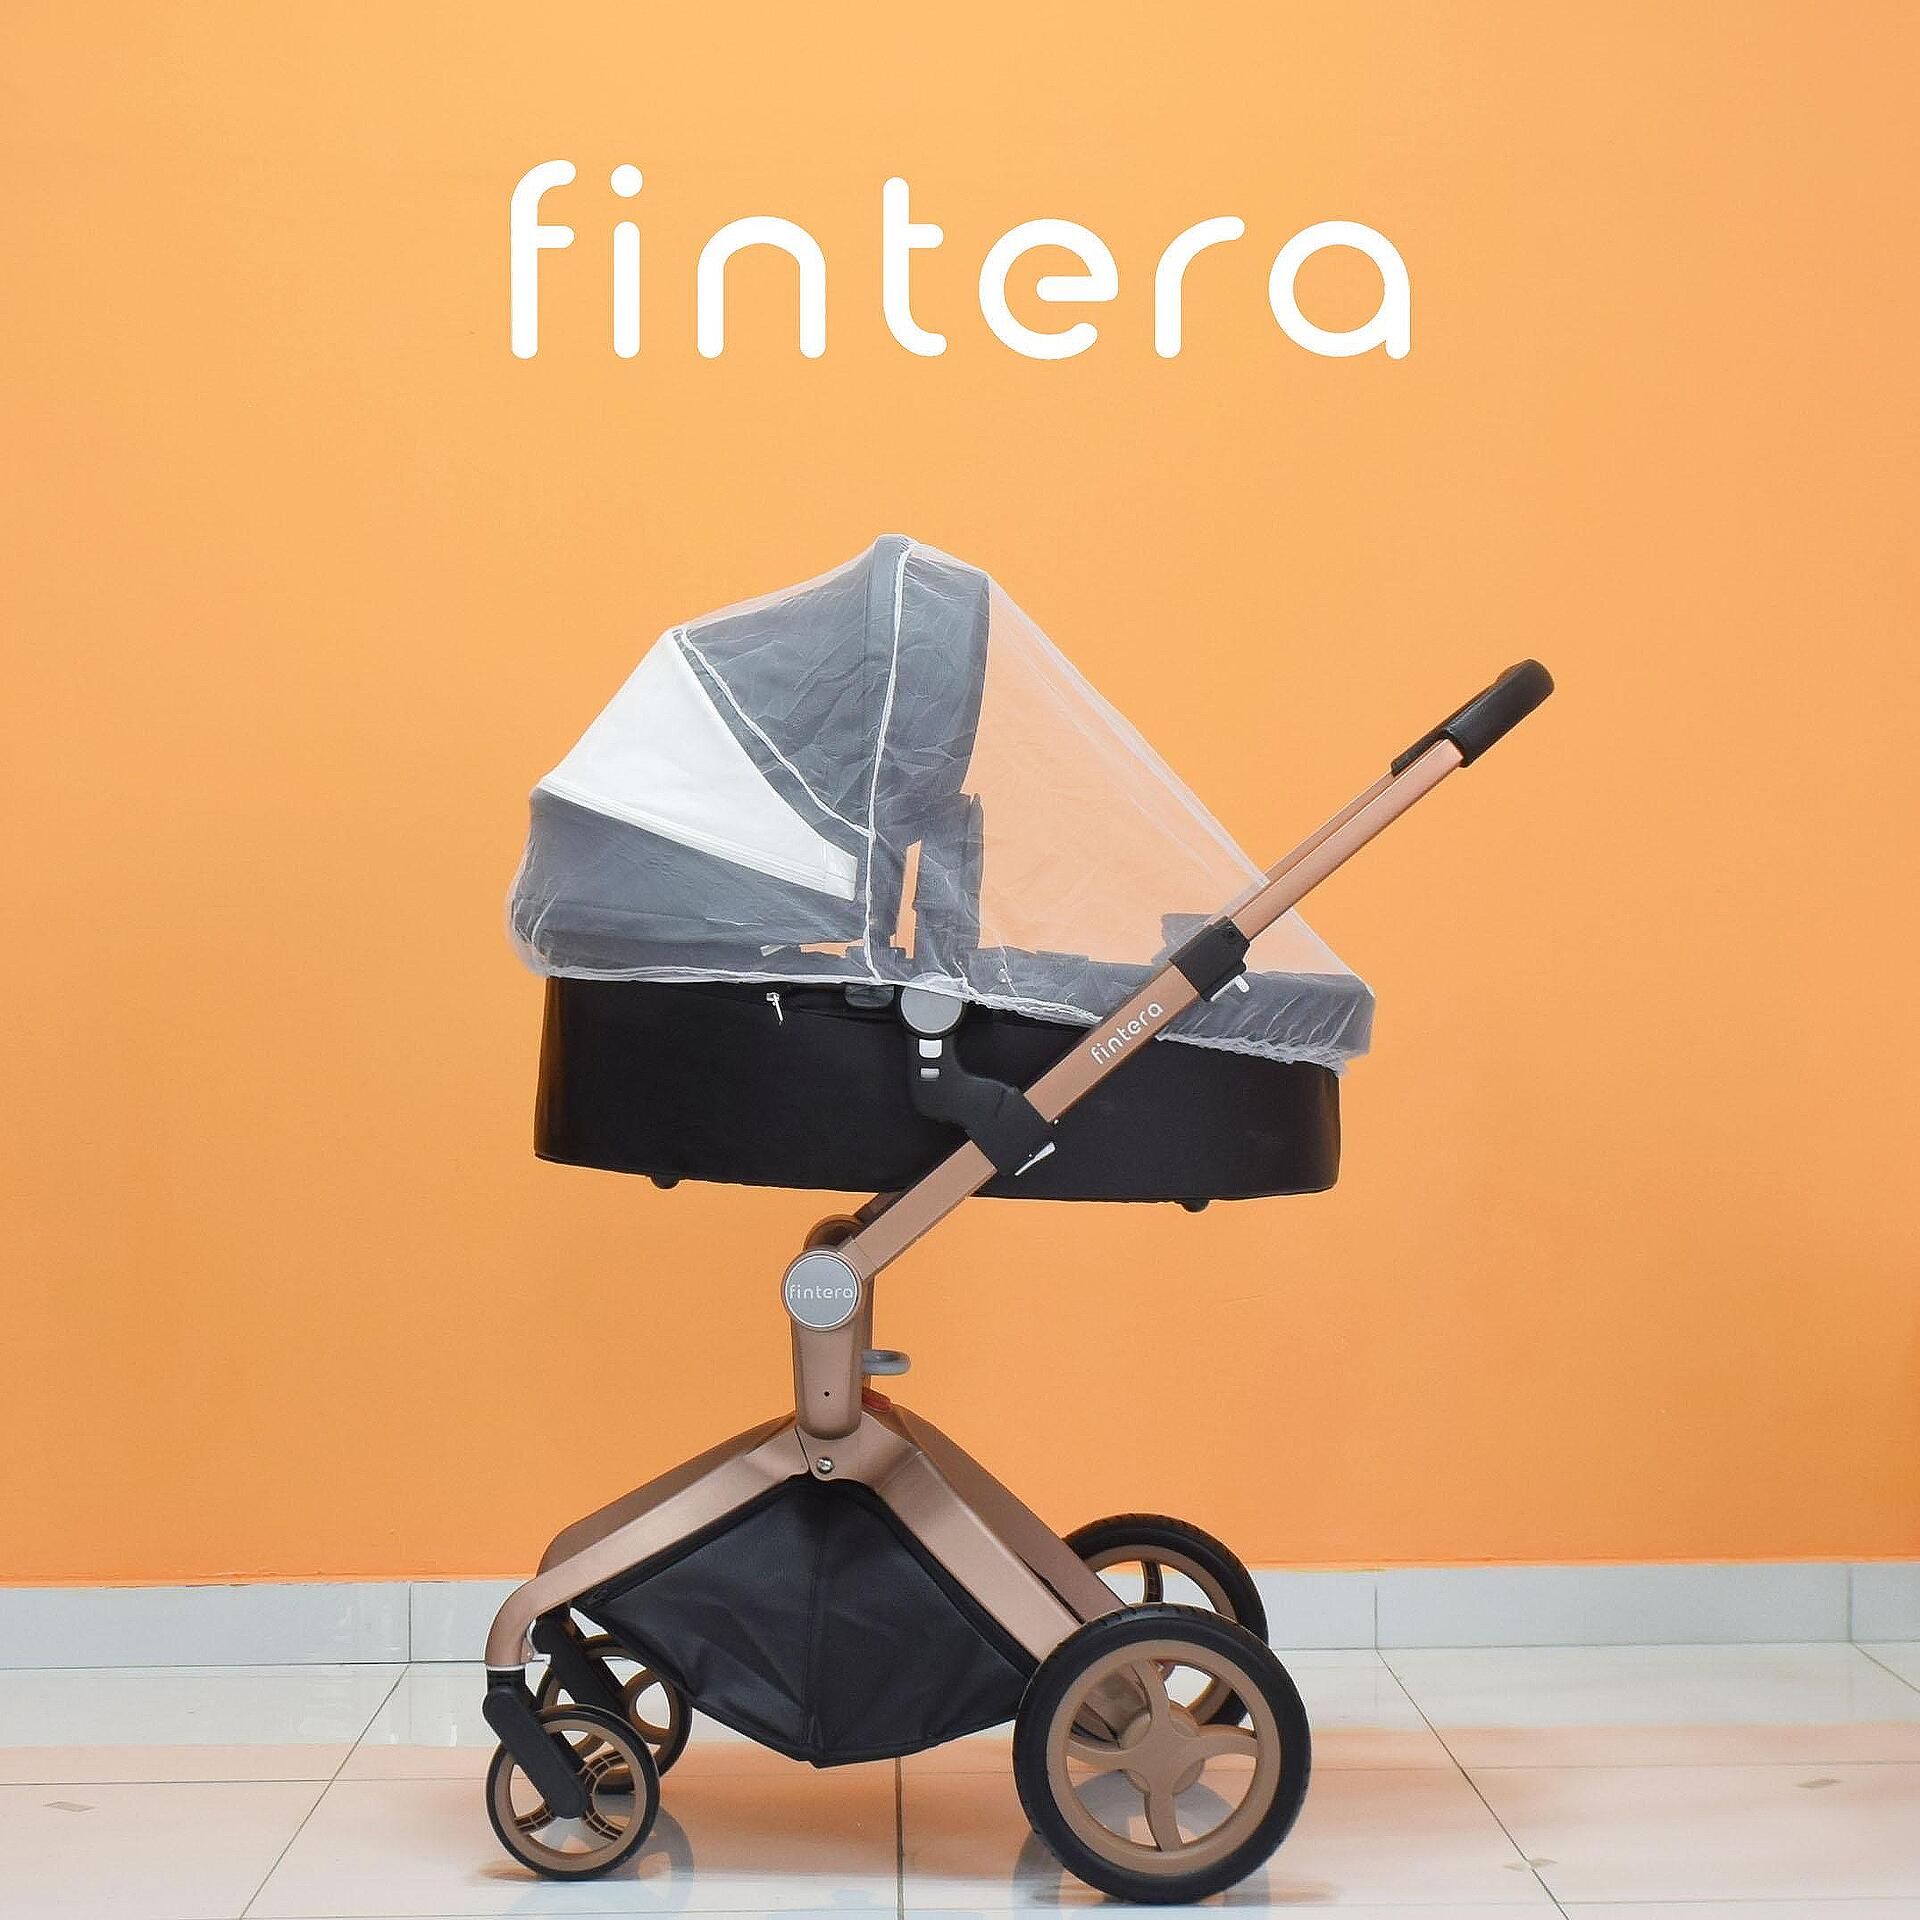 Бебешка количка Fintera Deluxe, Модел 3 в 1, Еко кожа черен цвят + Подарък чанта, дъждобран и комарник-Copy